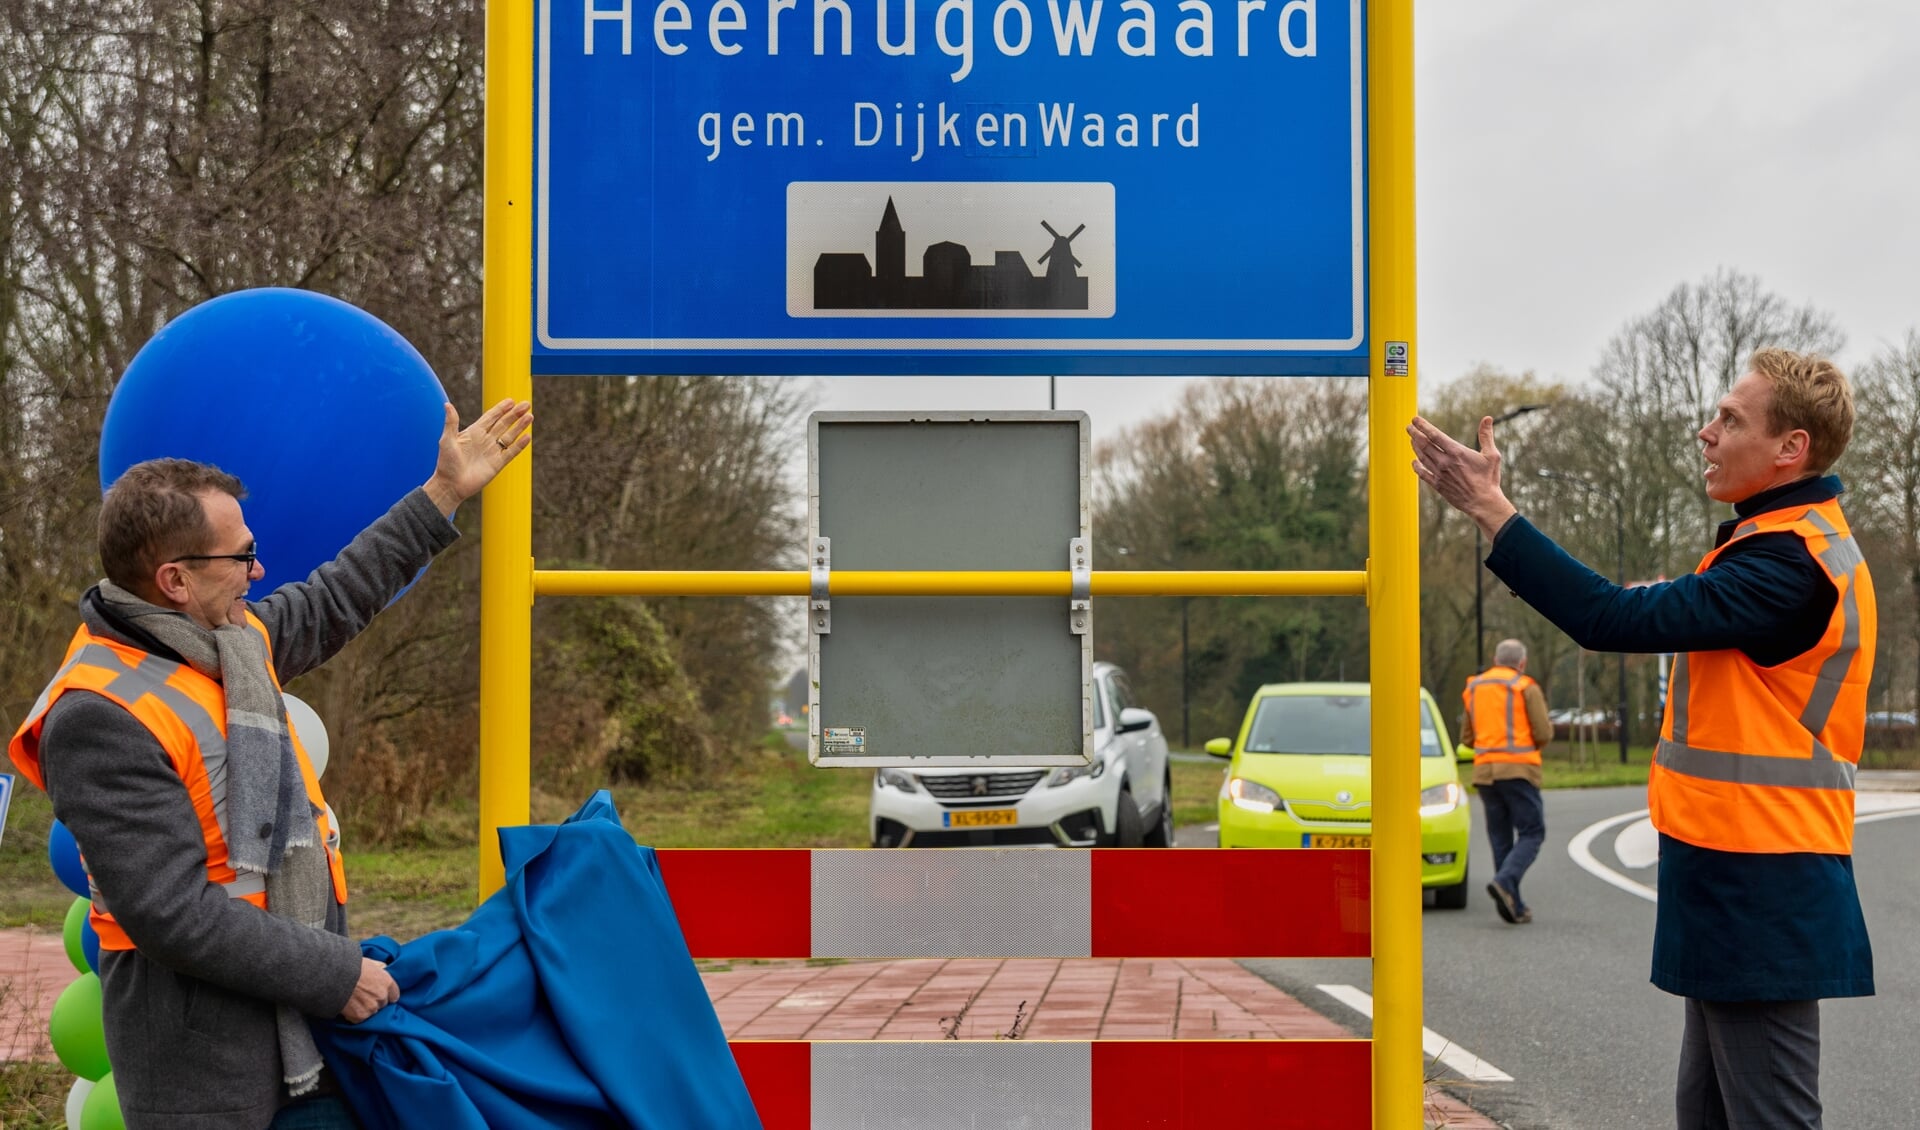 Wethouders Nils Langedijk (Openbare ruimte en Verkeer en vervoer gemeente Langedijk) en John Does (gemeente Heerhugowaard) onthulden samen het eerste kombord op de Karel van Manderstraat.